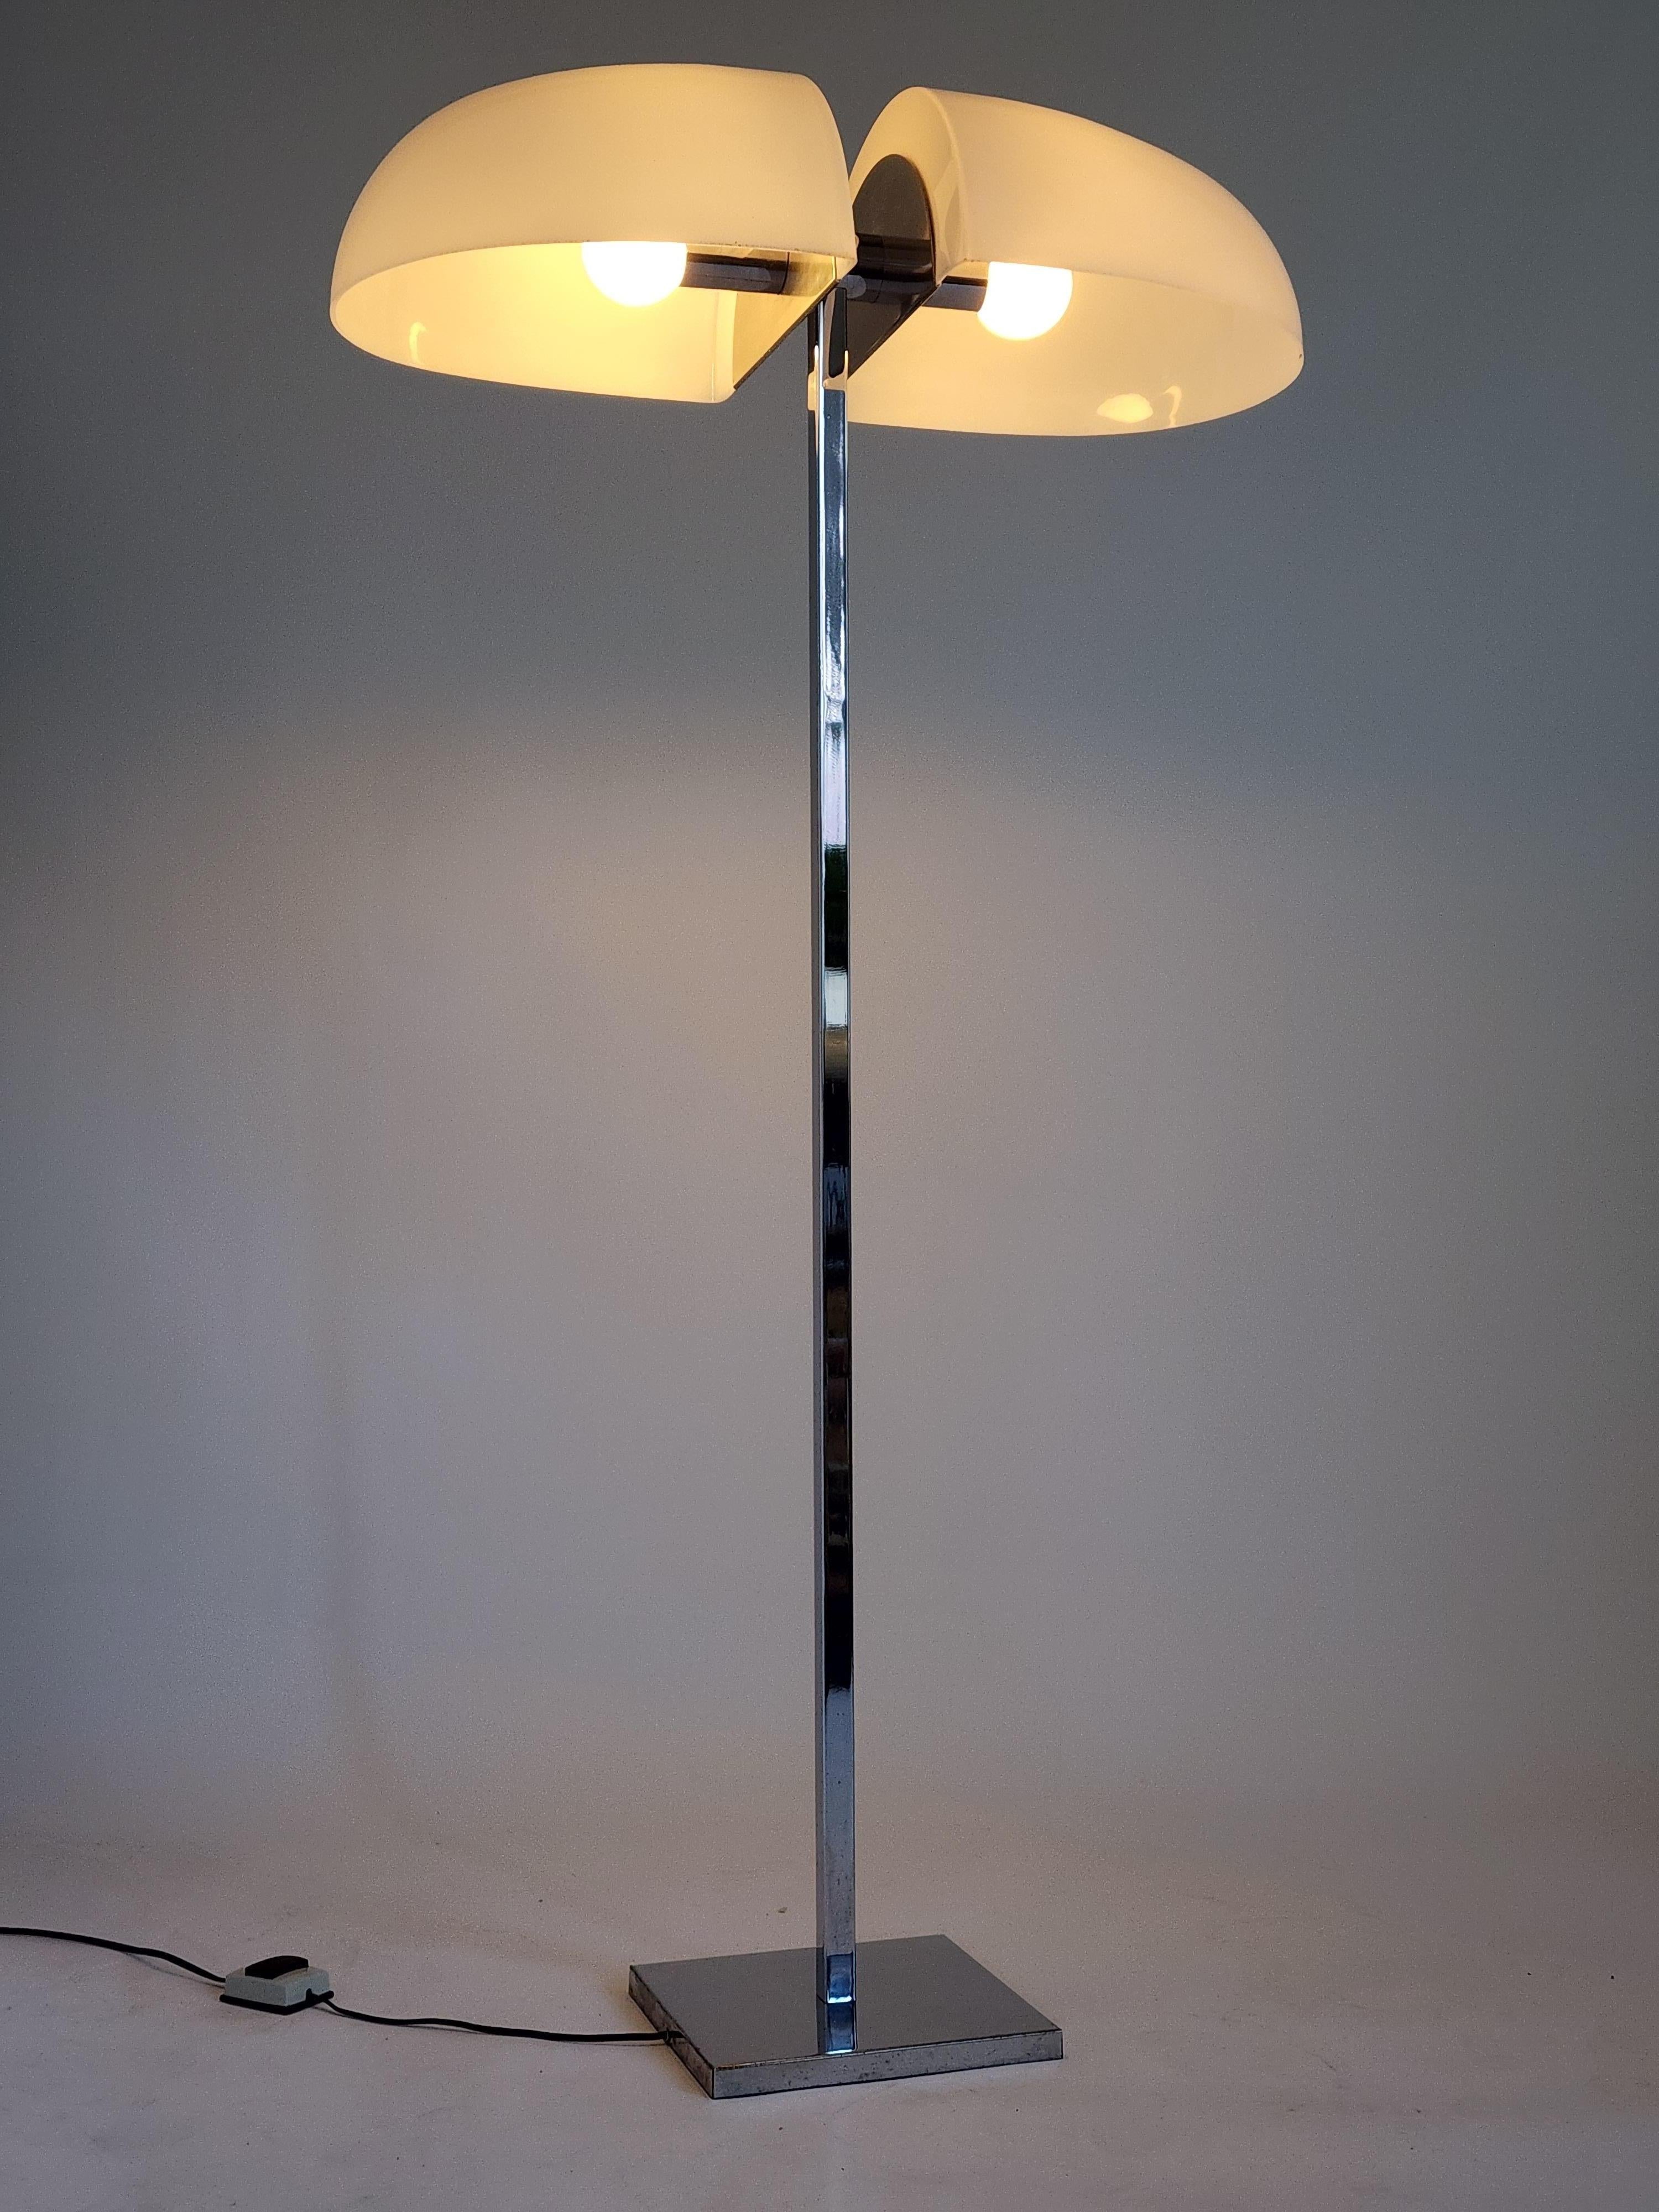 Rare lampadaire de Sergio Asti.

Grand abat-jour en acrylique à fente d'aération reposant sur une structure chromée. 

Chaque abat-jour mesure 13,50 po de long, 7,5 po de haut et 15,25 po de profondeur. 

2 douilles céramiques E26 de taille